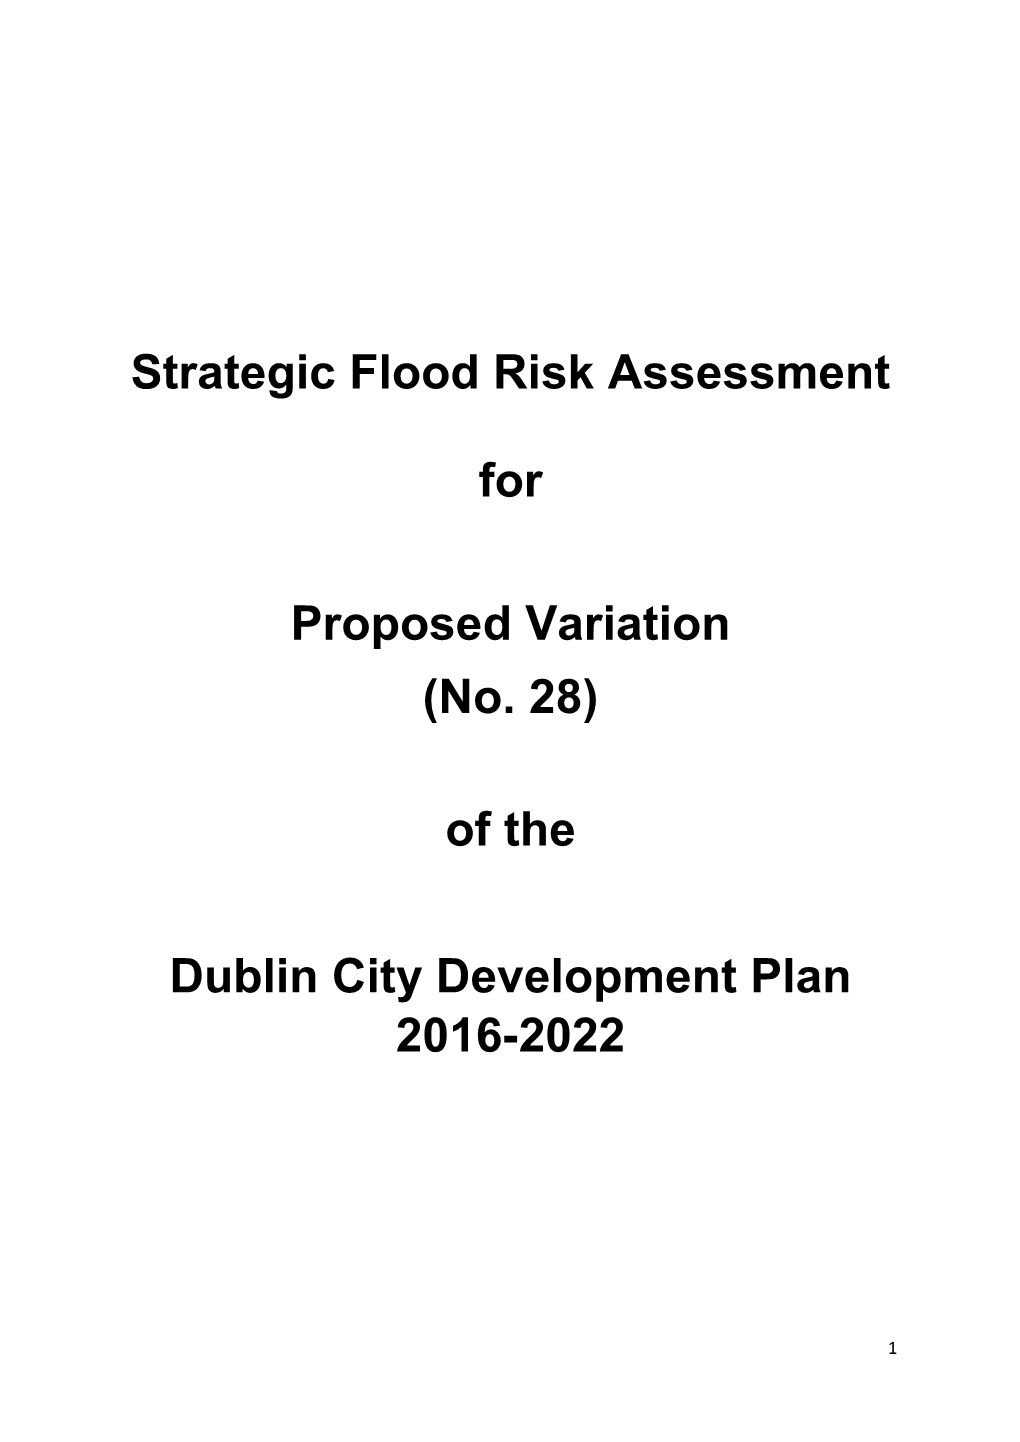 Strategic Flood Risk Assessment For